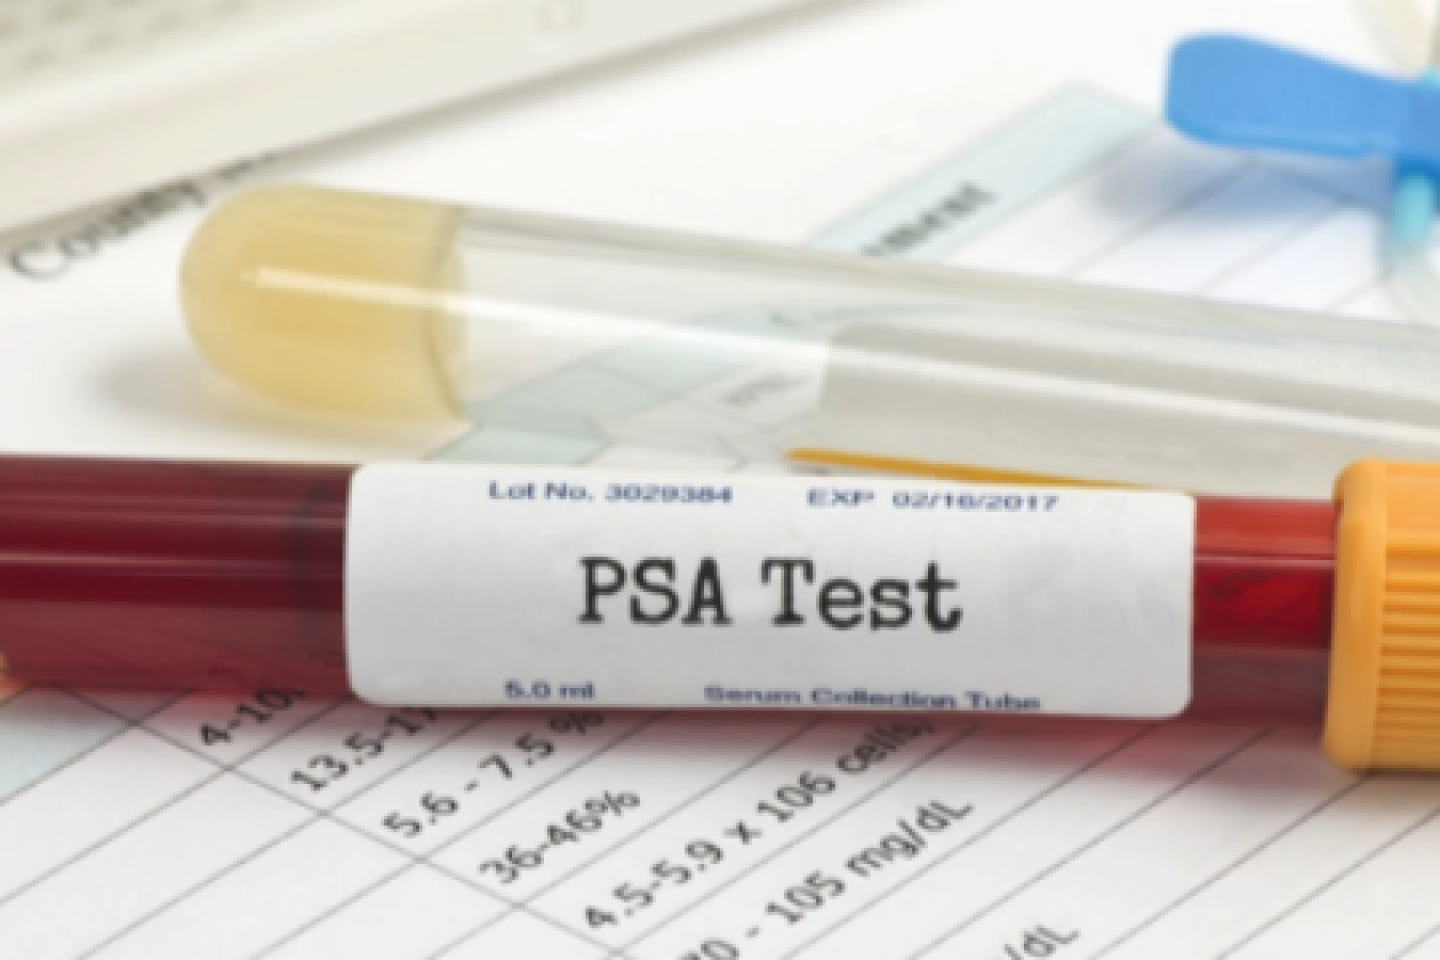 PSA Test tube